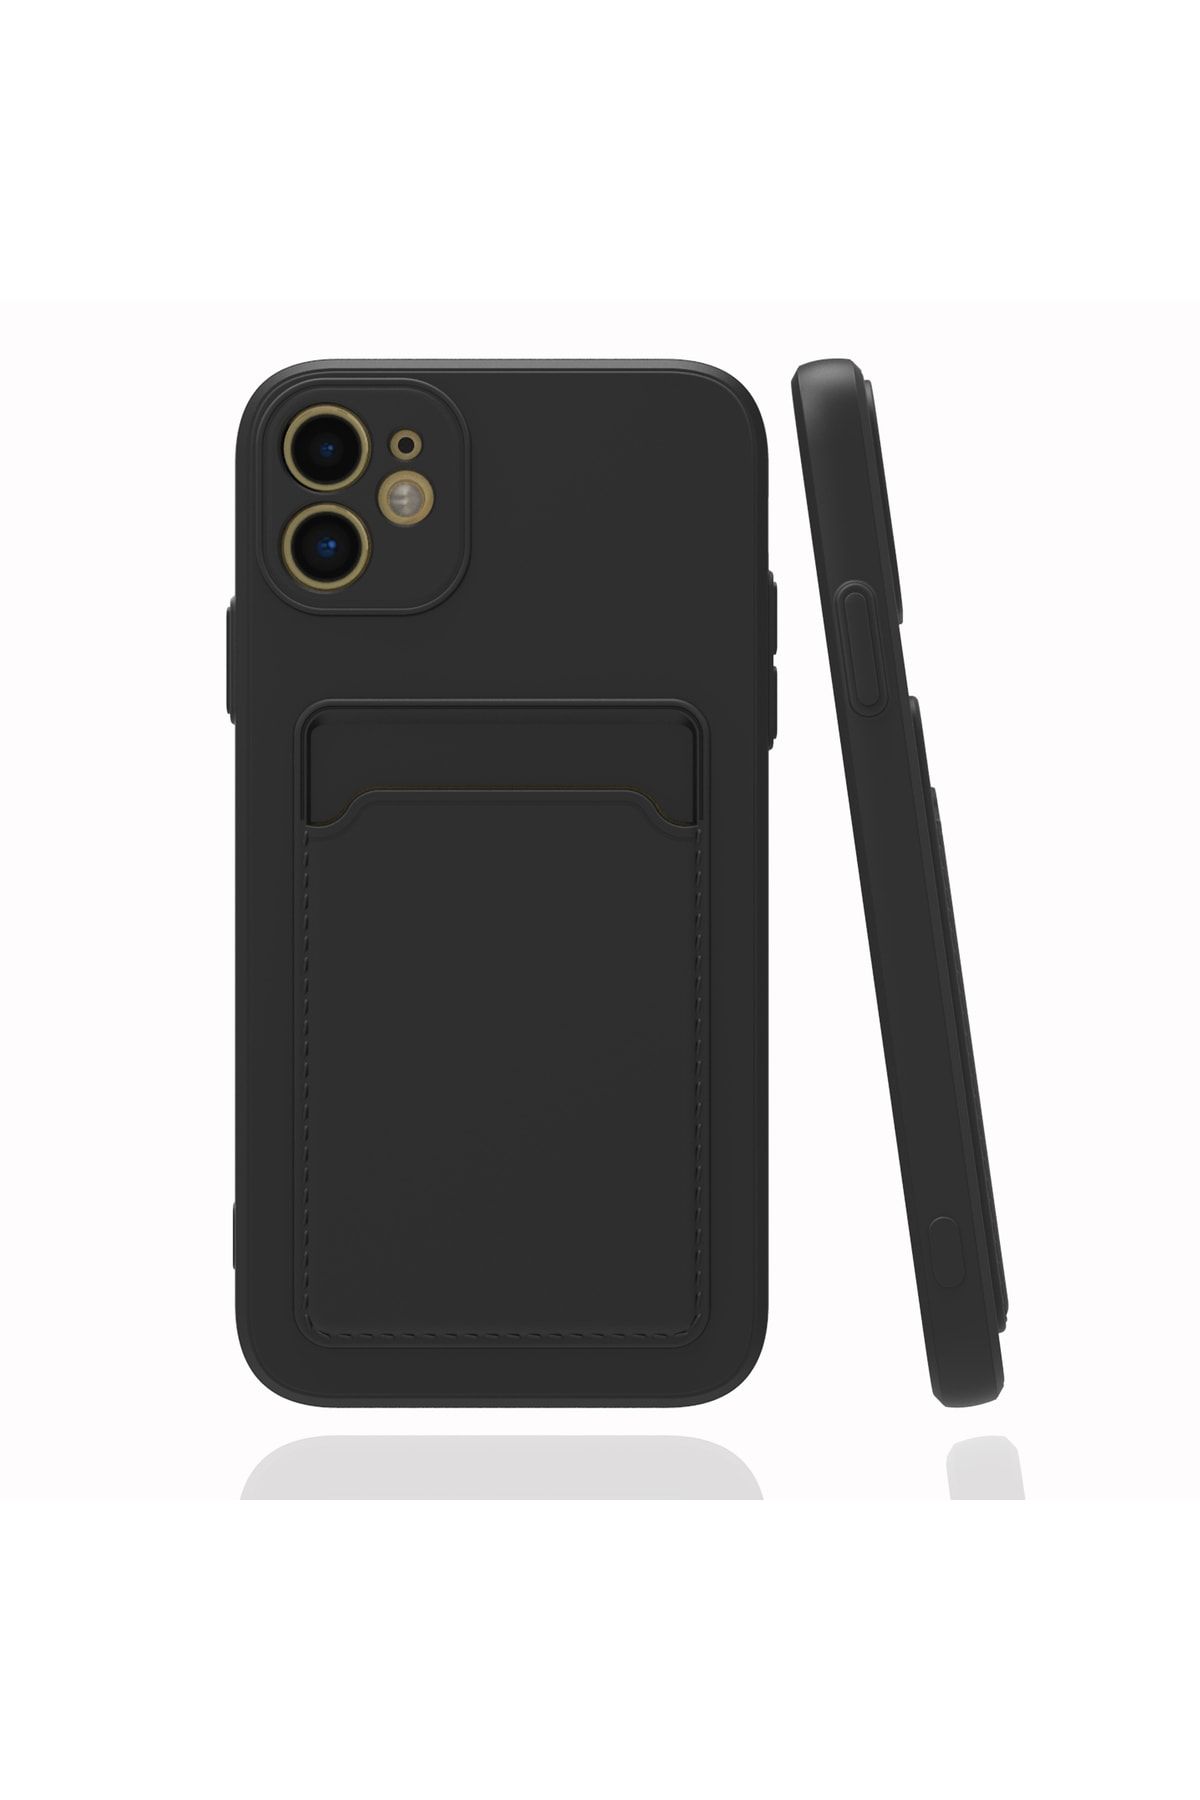 Fibaks İphone 11 Uyumlu Kılıf Kamera Korumalı Kartlıklı Cüzdanlı Kırmızı Tuşlu Siyah Silikon Kapak